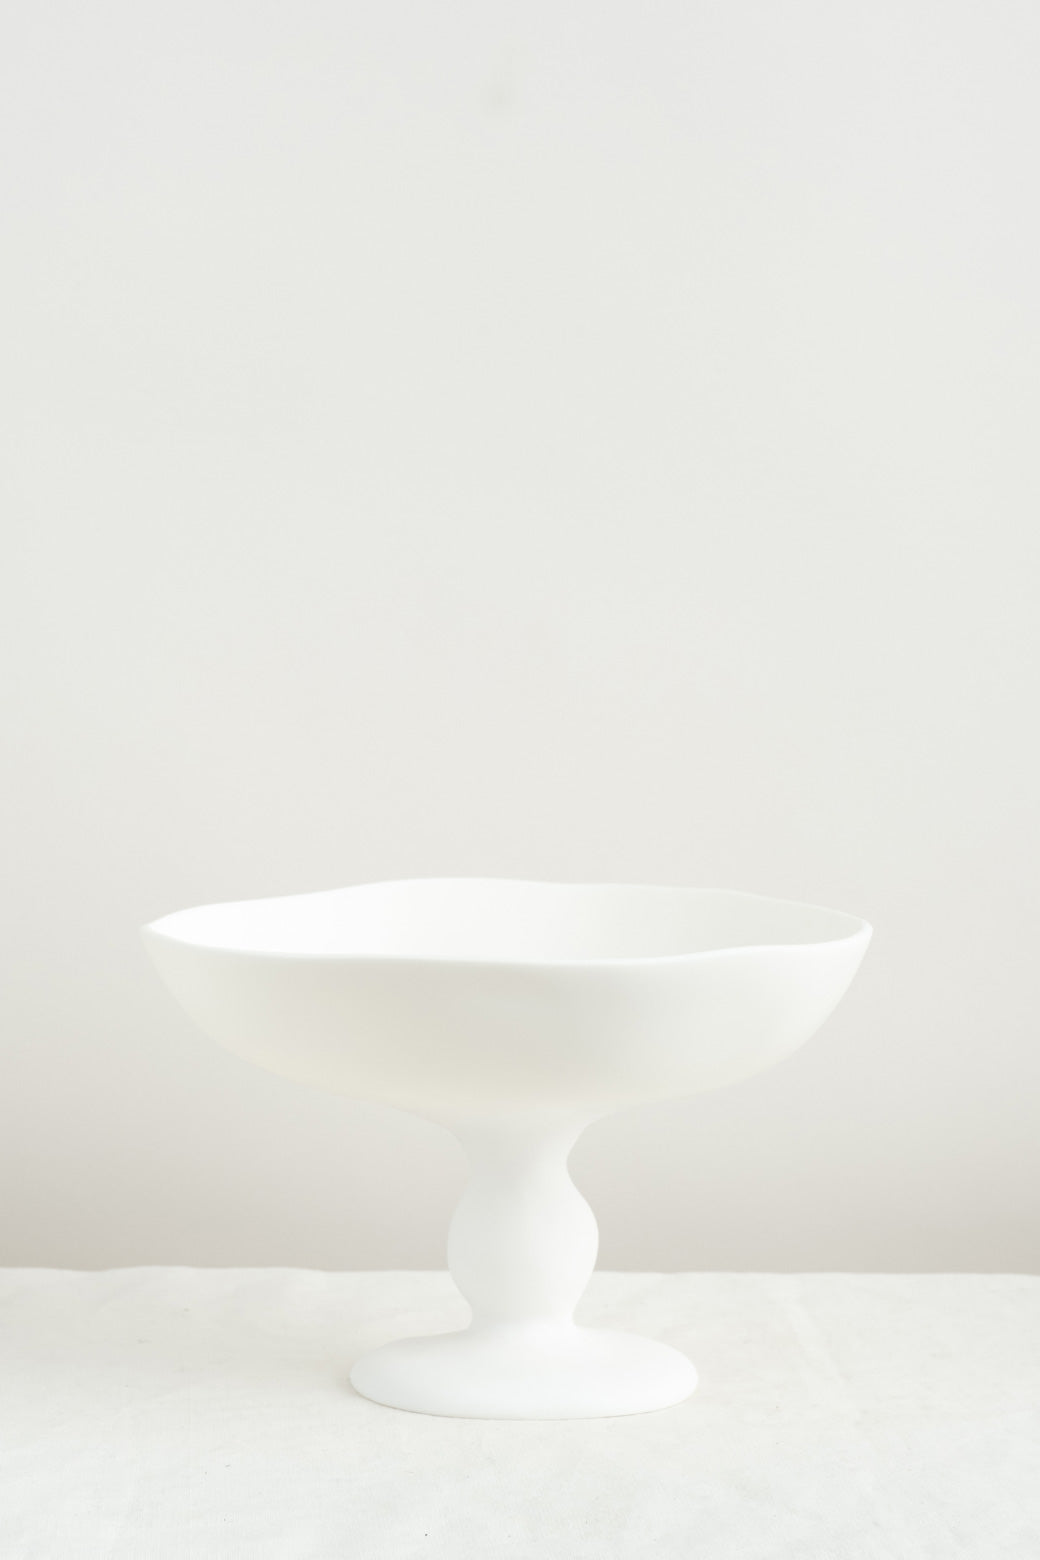 Tina Frey Designs Large Pedestal Bowl